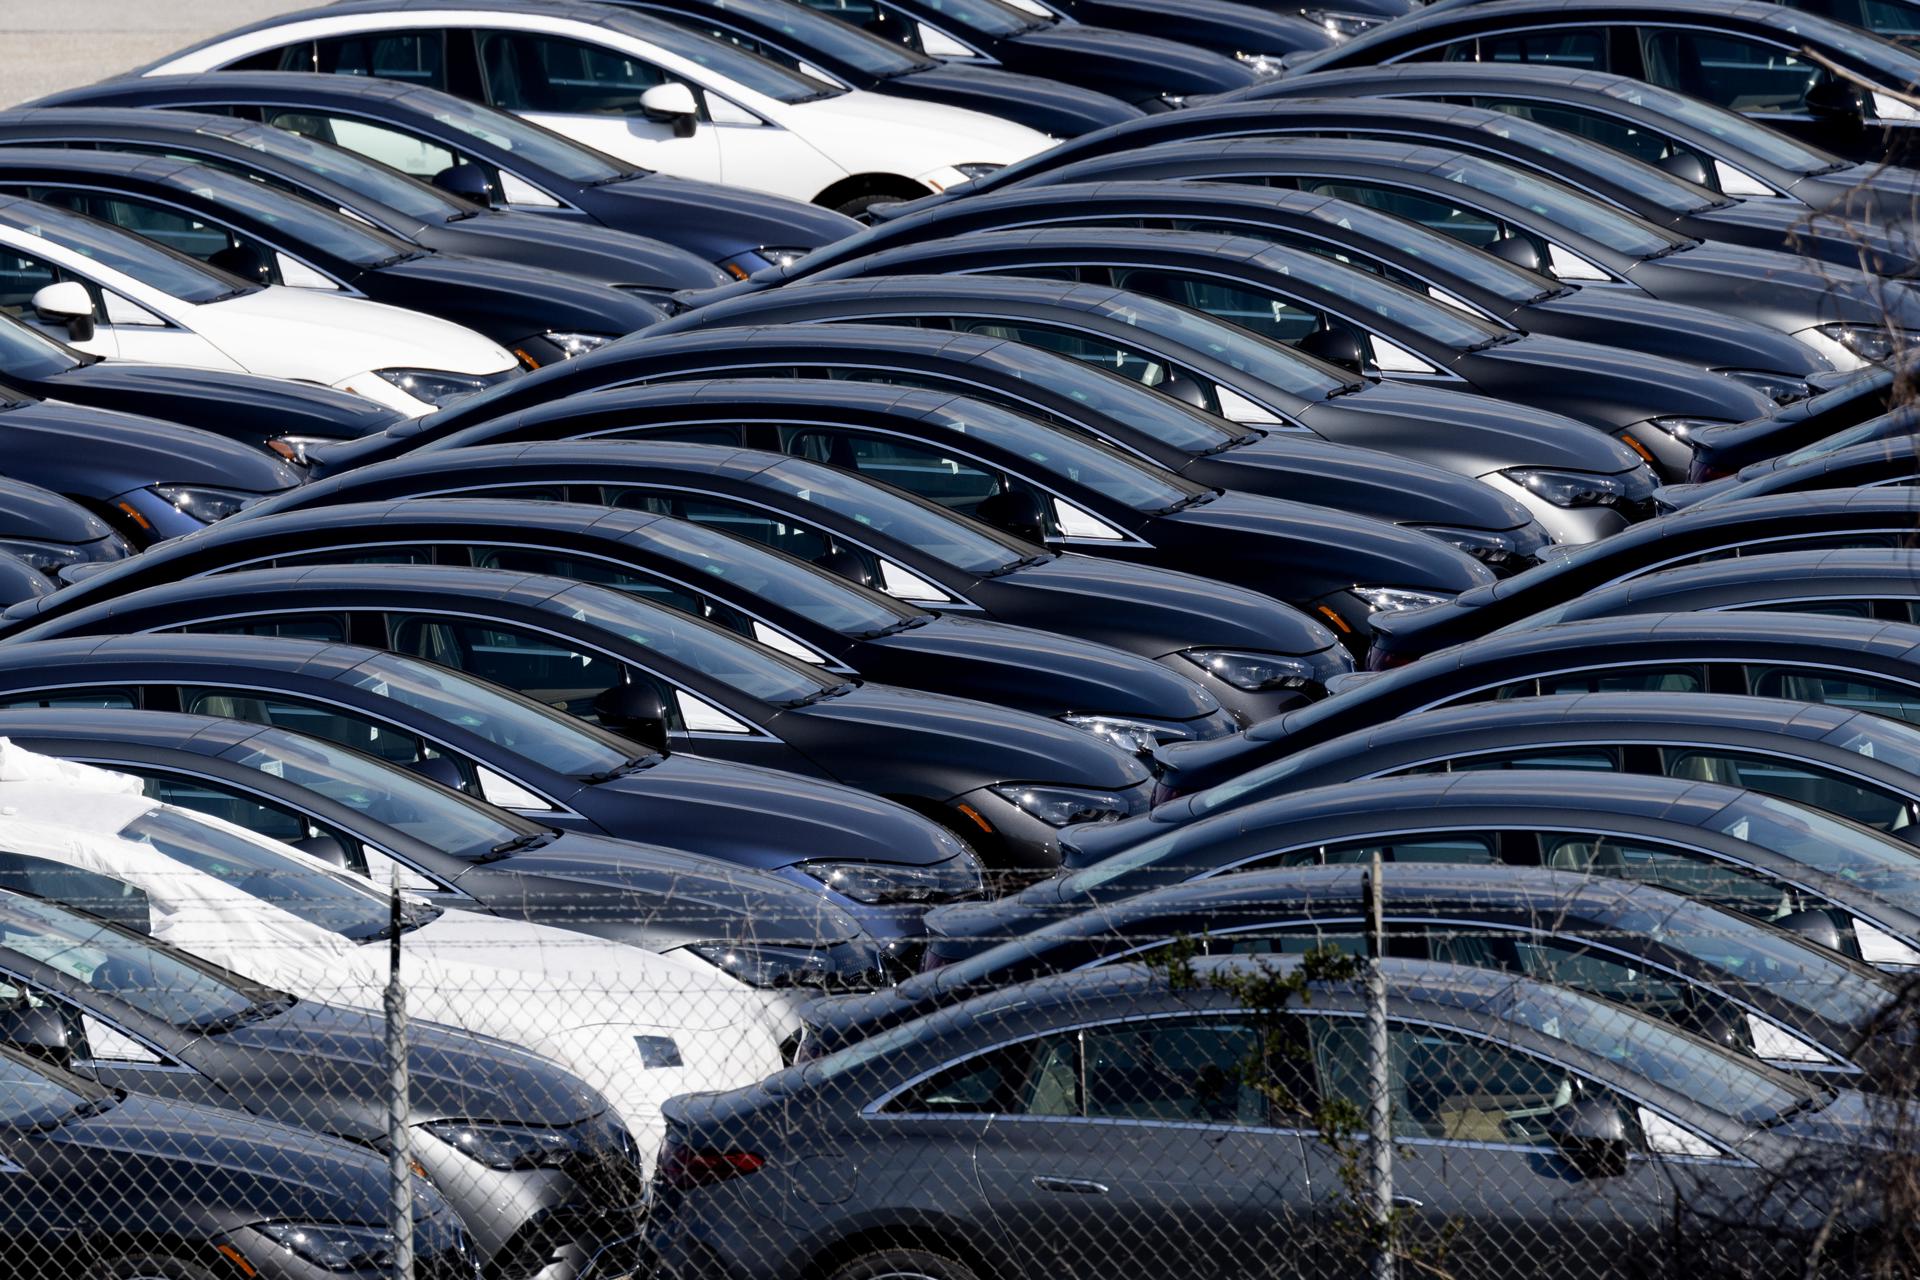 Cientos de vehículos de la marca Mercedes aguardan en un lote cerca del río Patapsco en Baltimore